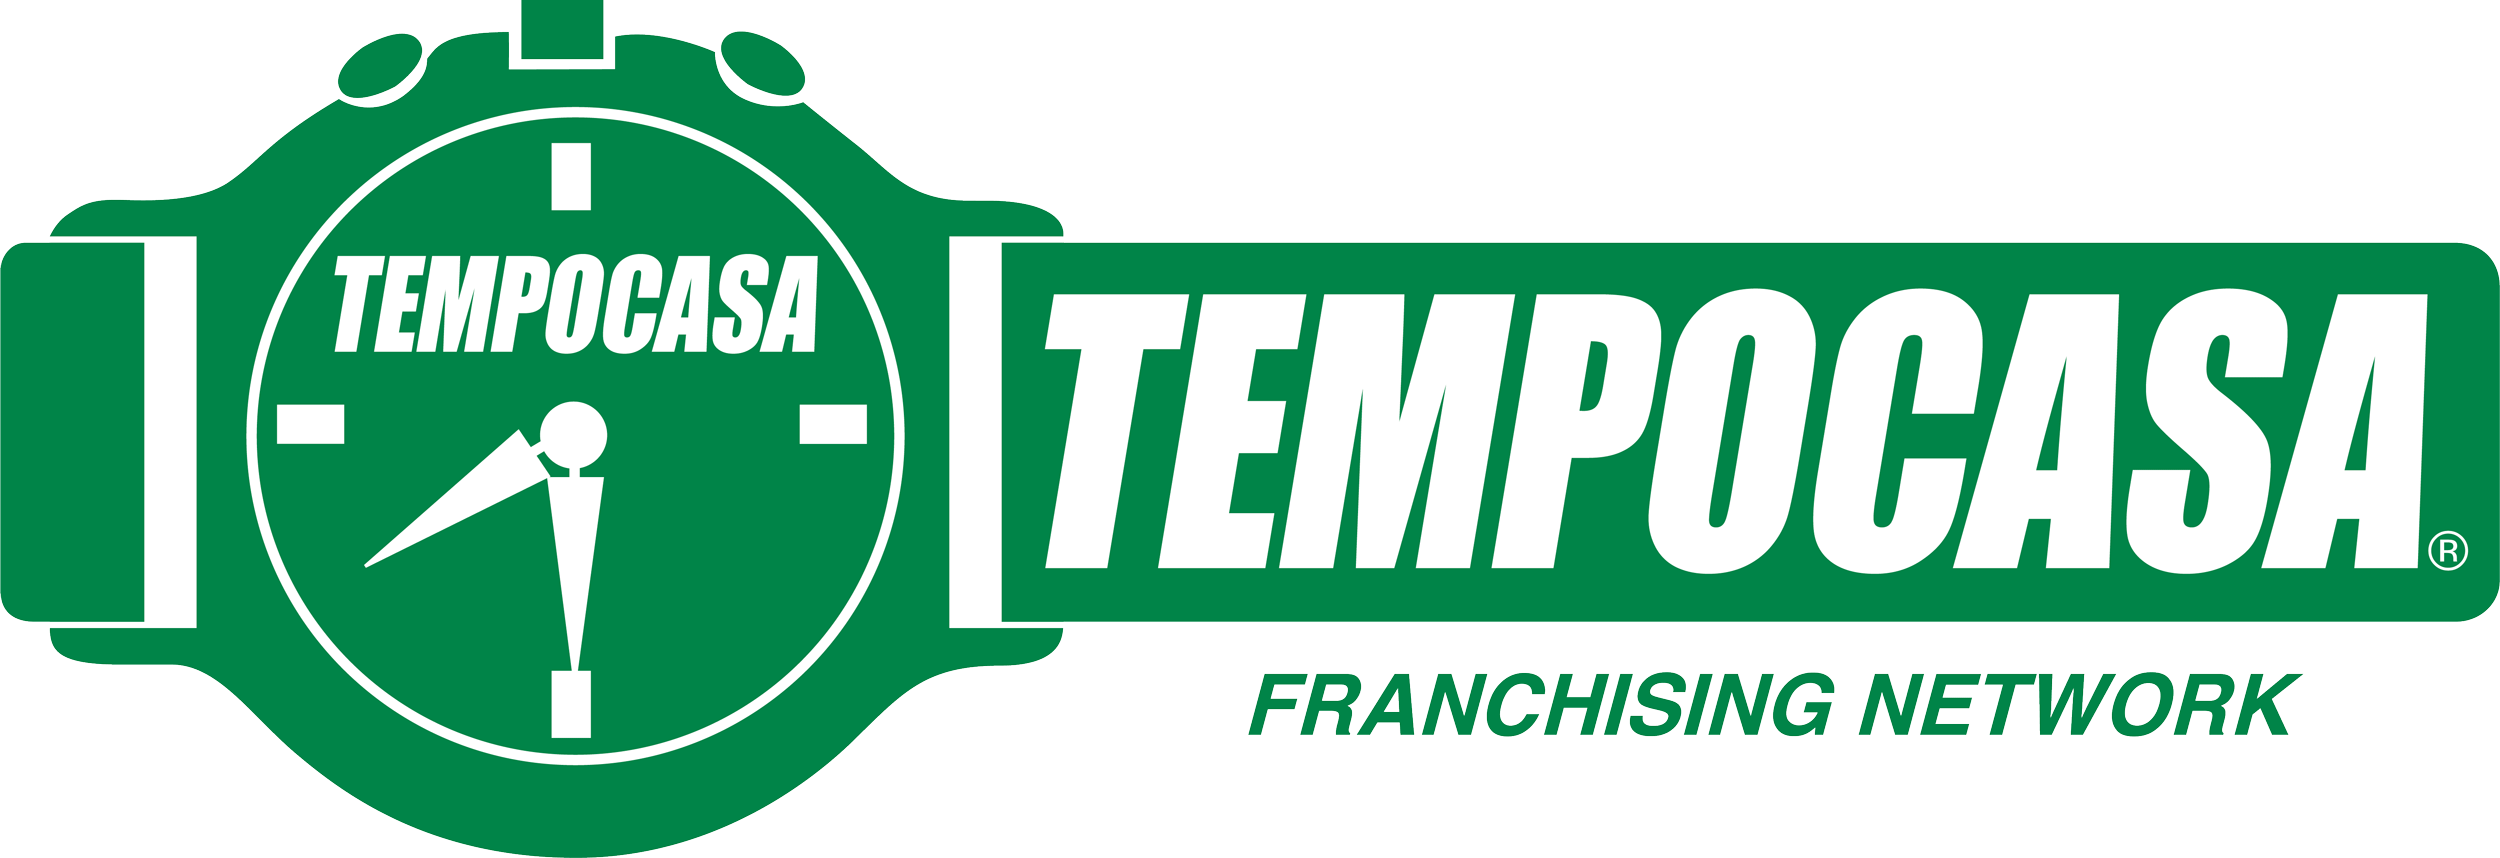 Rivalta di Torino - Tempocasa